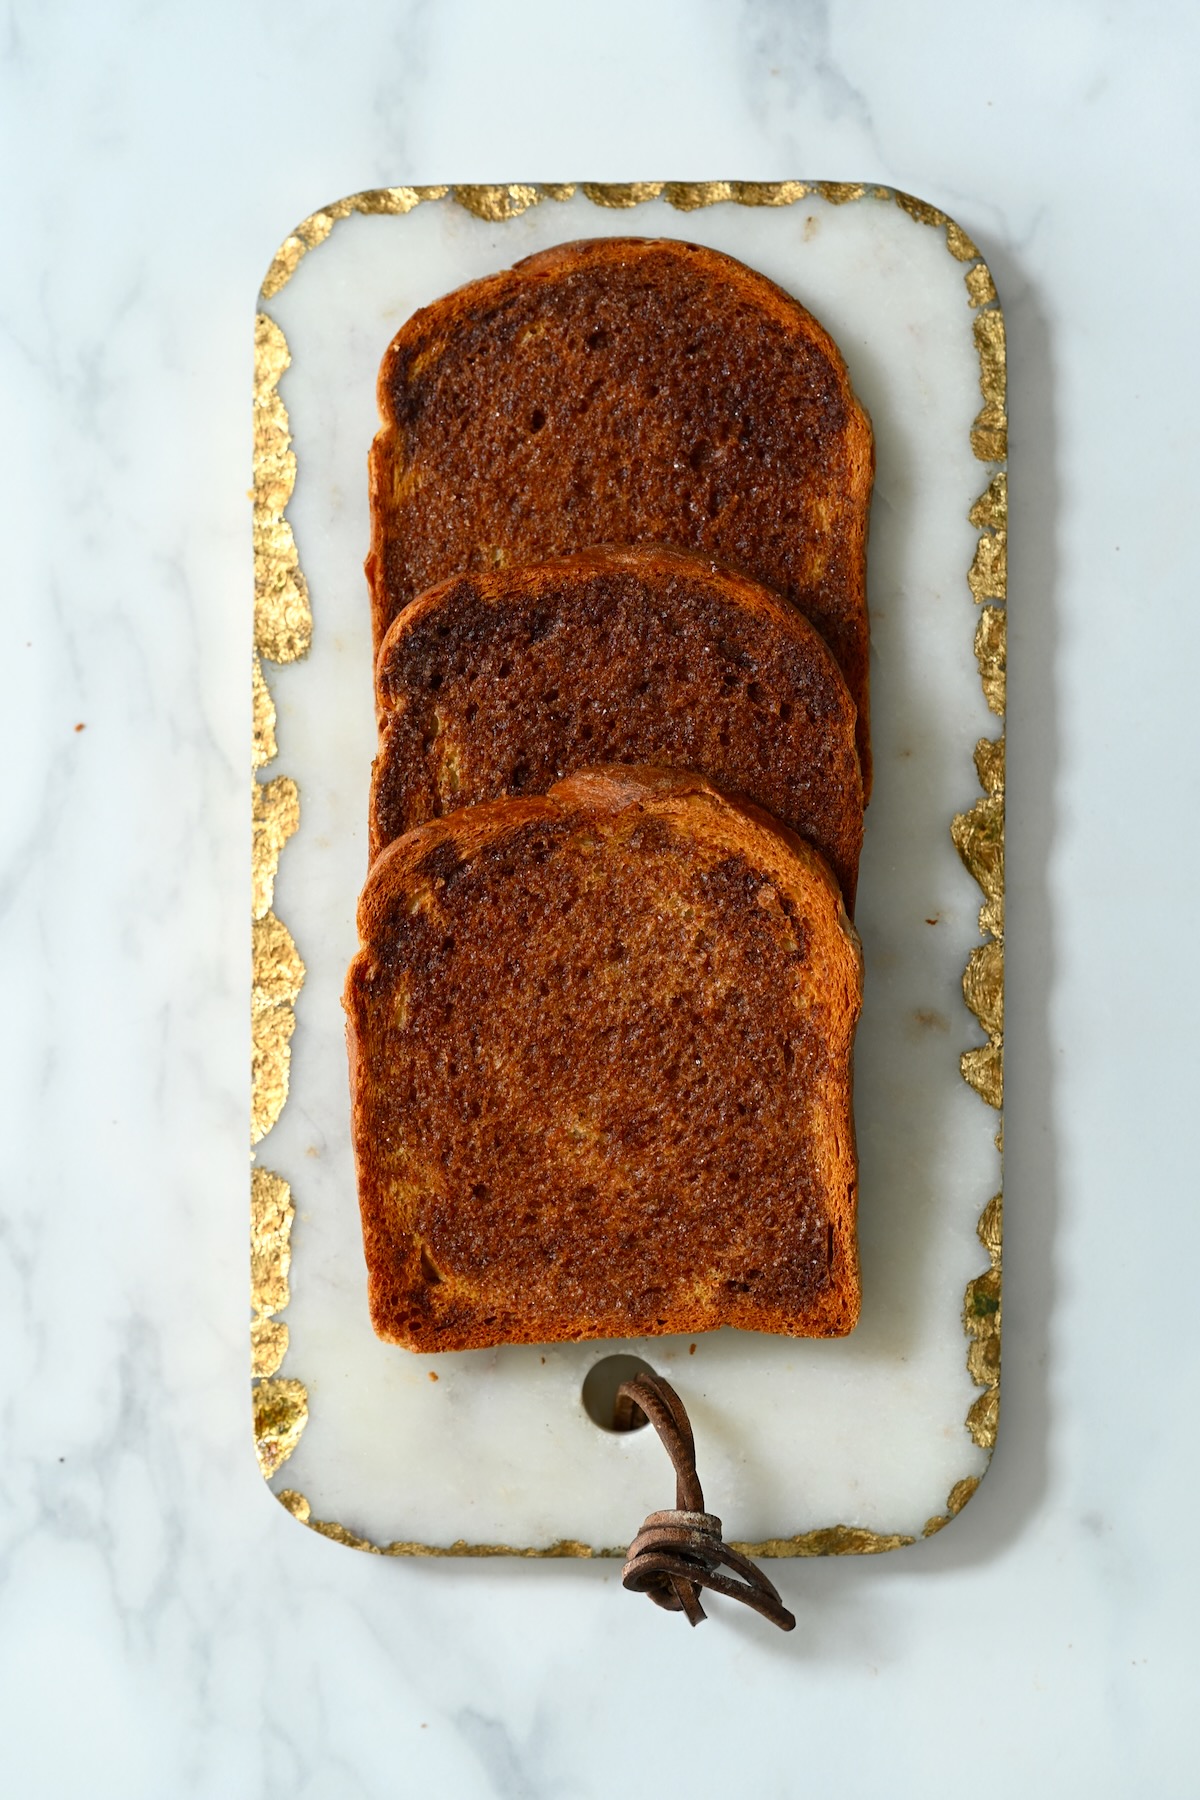 Three slices of cinnamon toast on a plate